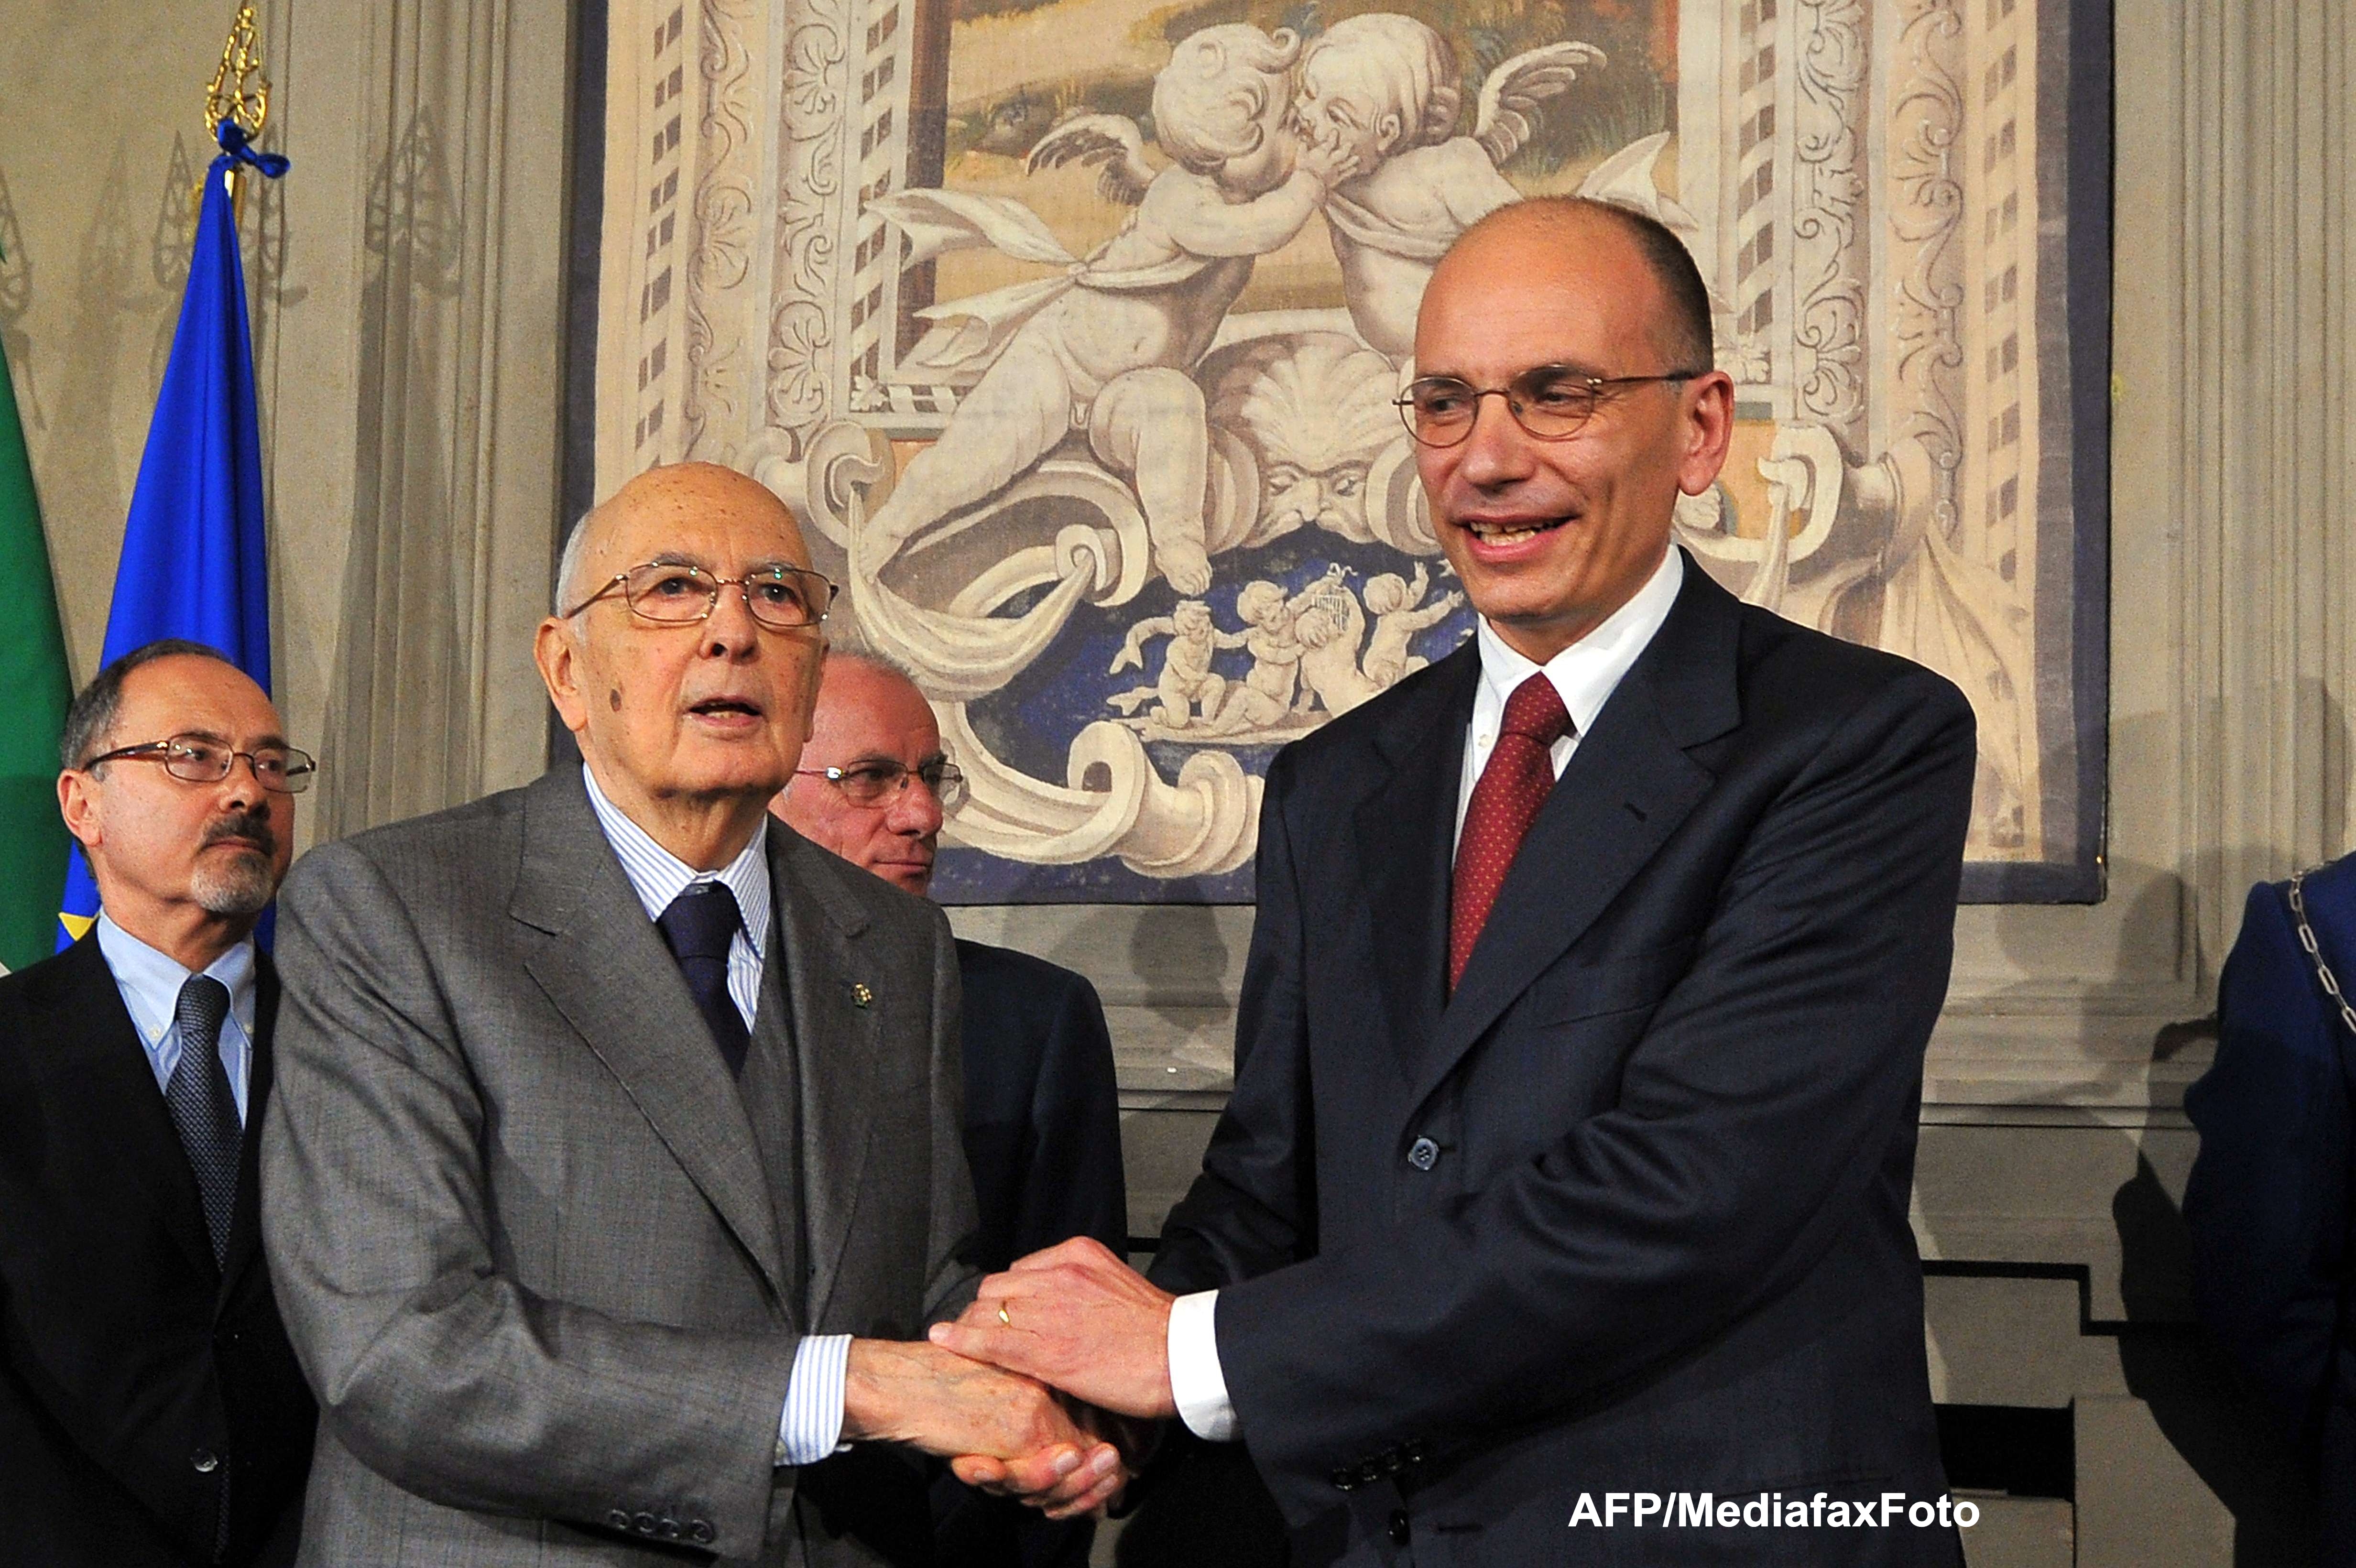 Dupa doua luni de criza politica, Guvernul italian a depus juramantul de investire